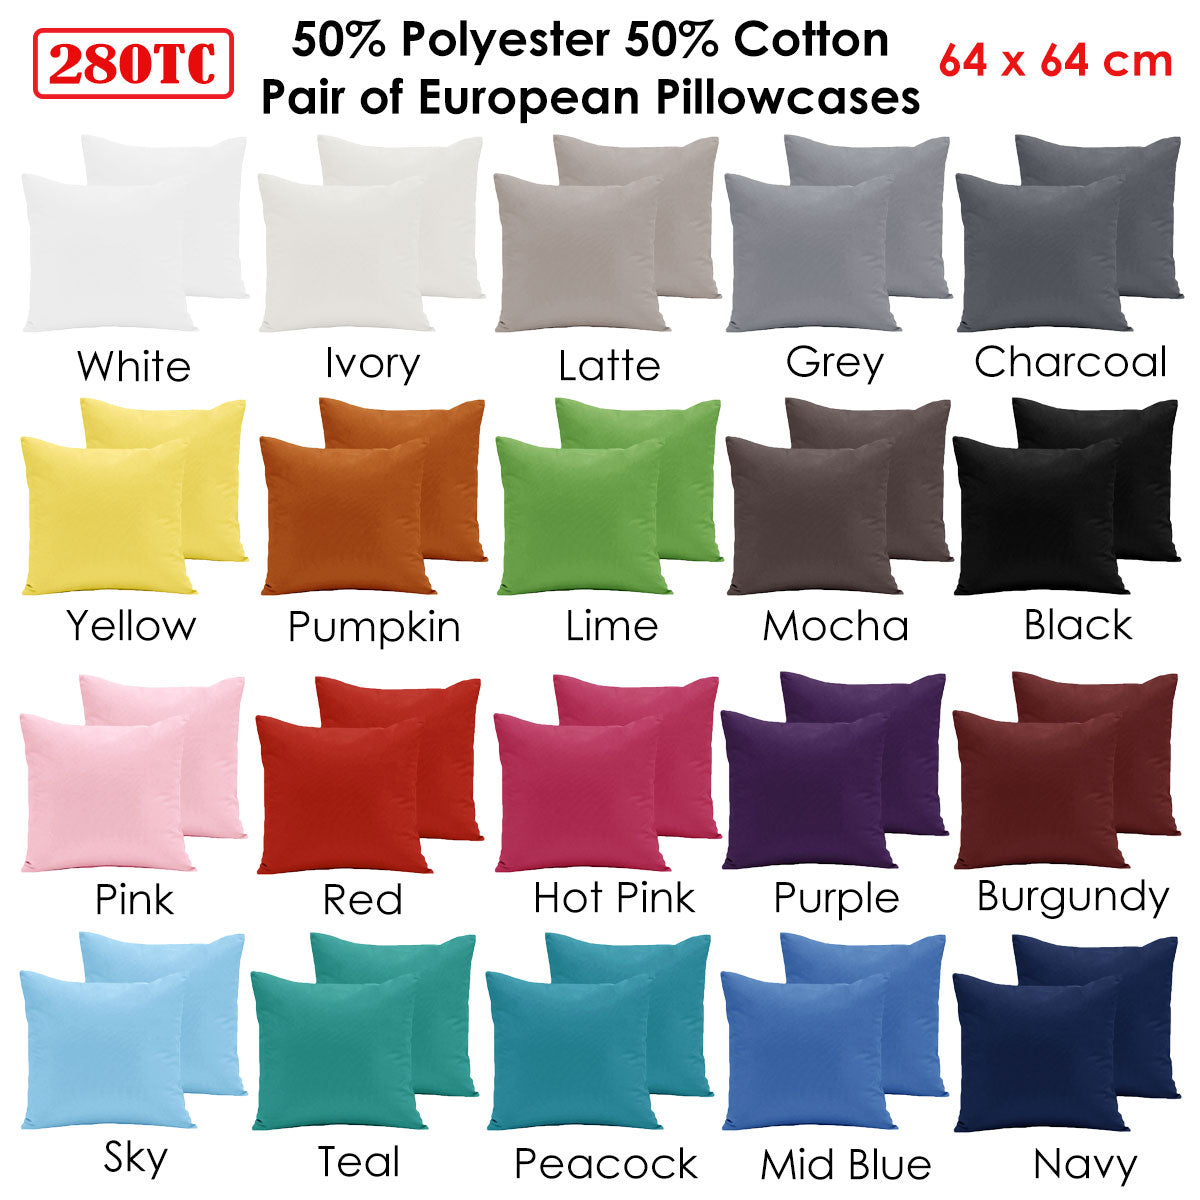 Pair of  280TC Polyester Cotton European Pillowcases Teal